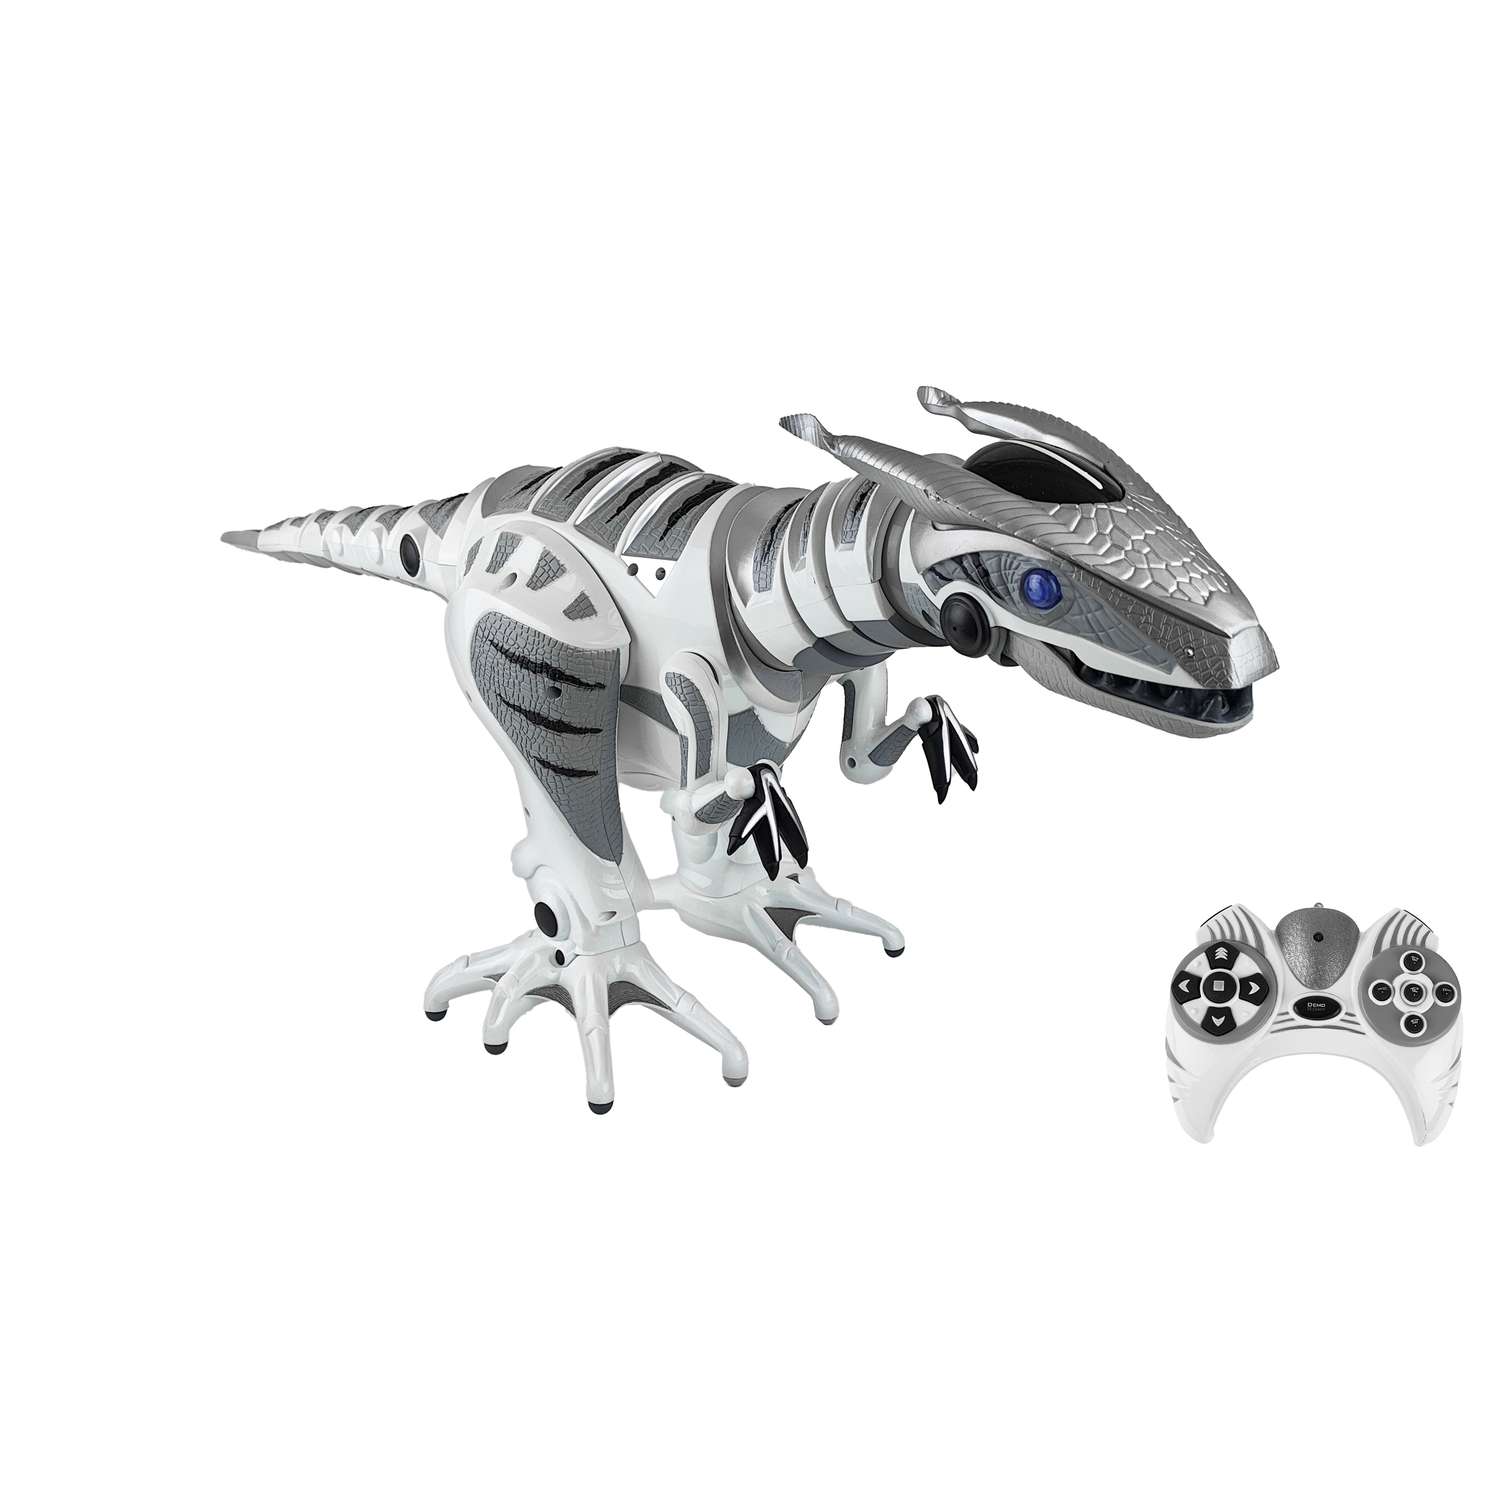 Игрушка динозавр Create Toys на пульте управления Roboraptor 76 см - фото 1